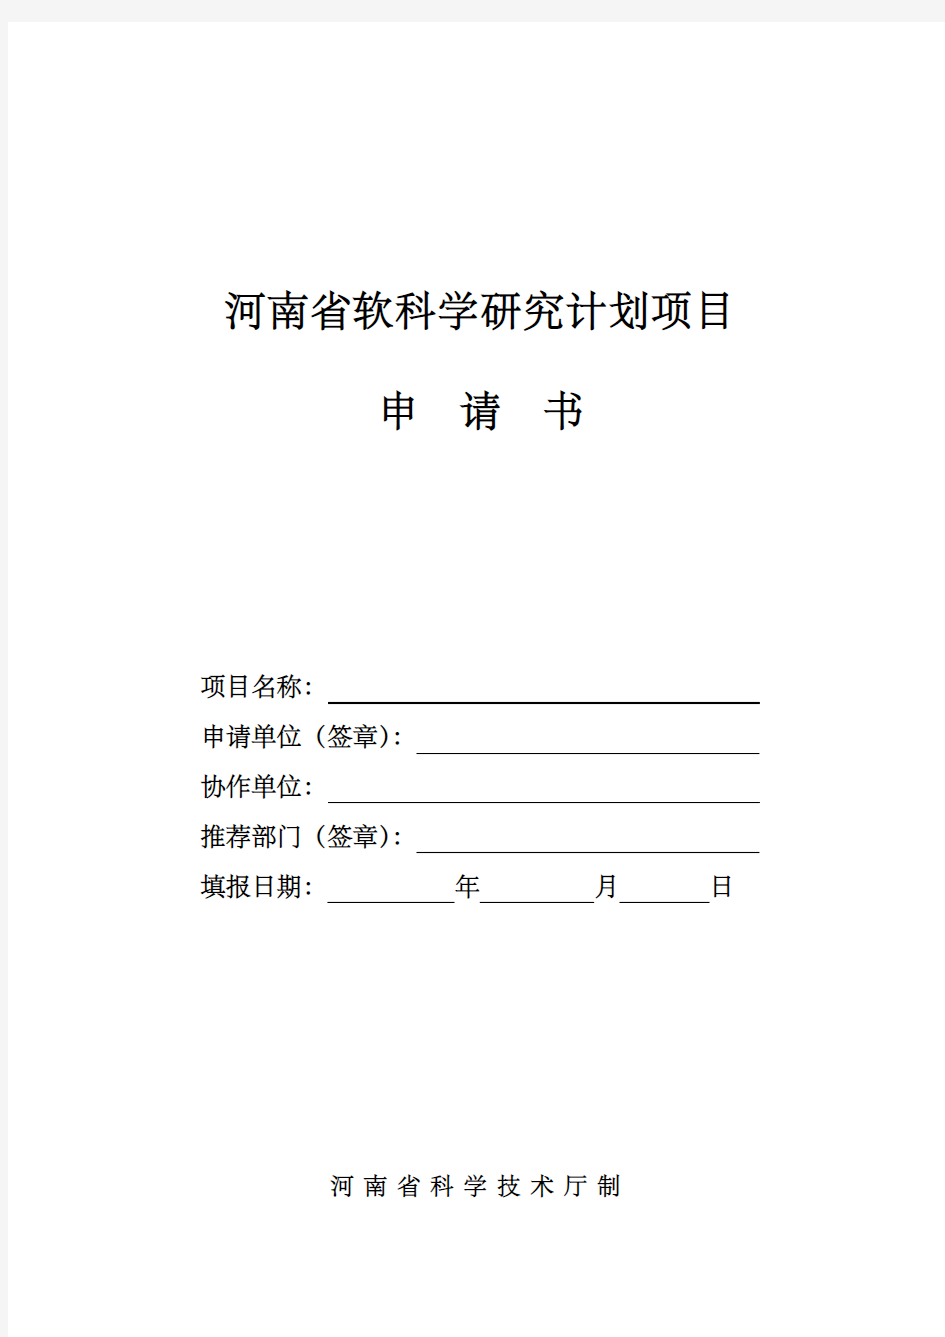 河南软科学研究计划项目申请书